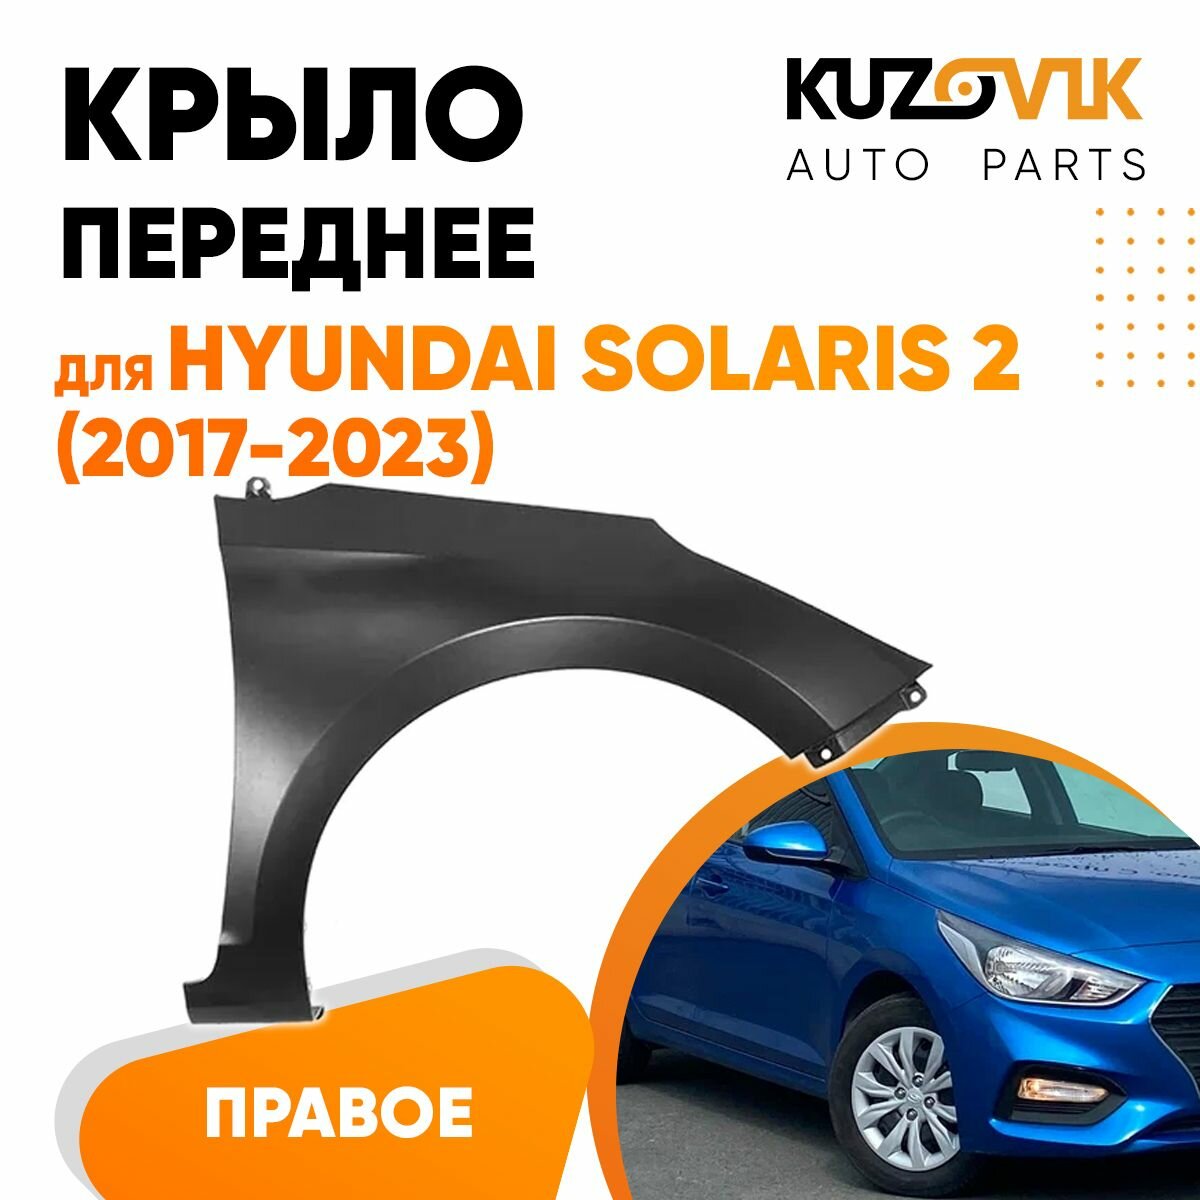 Крыло переднее правое для Хендай Солярис Hyundai Solaris 2 (2017-2023) металлическое без отверстия под повторитель, локер, защита крыла